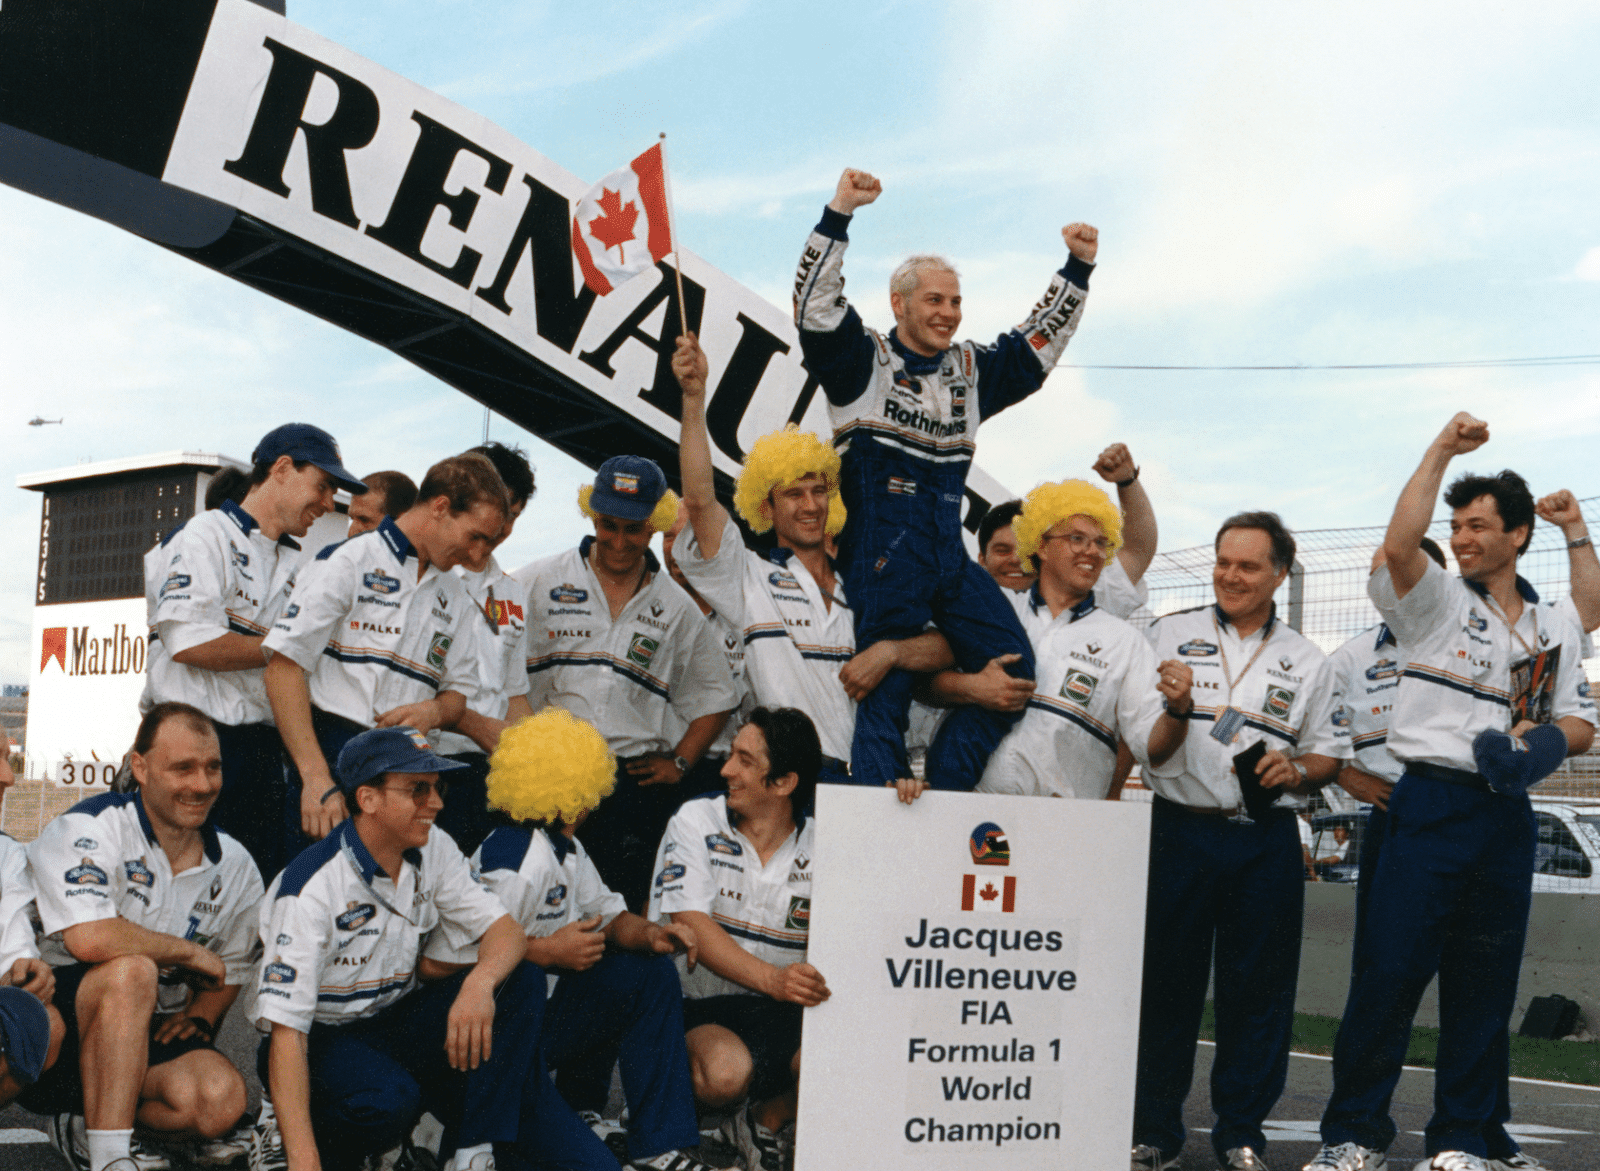 Den canadiske racerkører, Jacques Villeneuve, der vandt Formel 1 i 1997, deltager i Copenhagen Historic Grand Prix, hvor han er til start i det traditionsrige Royal Pro/Am.